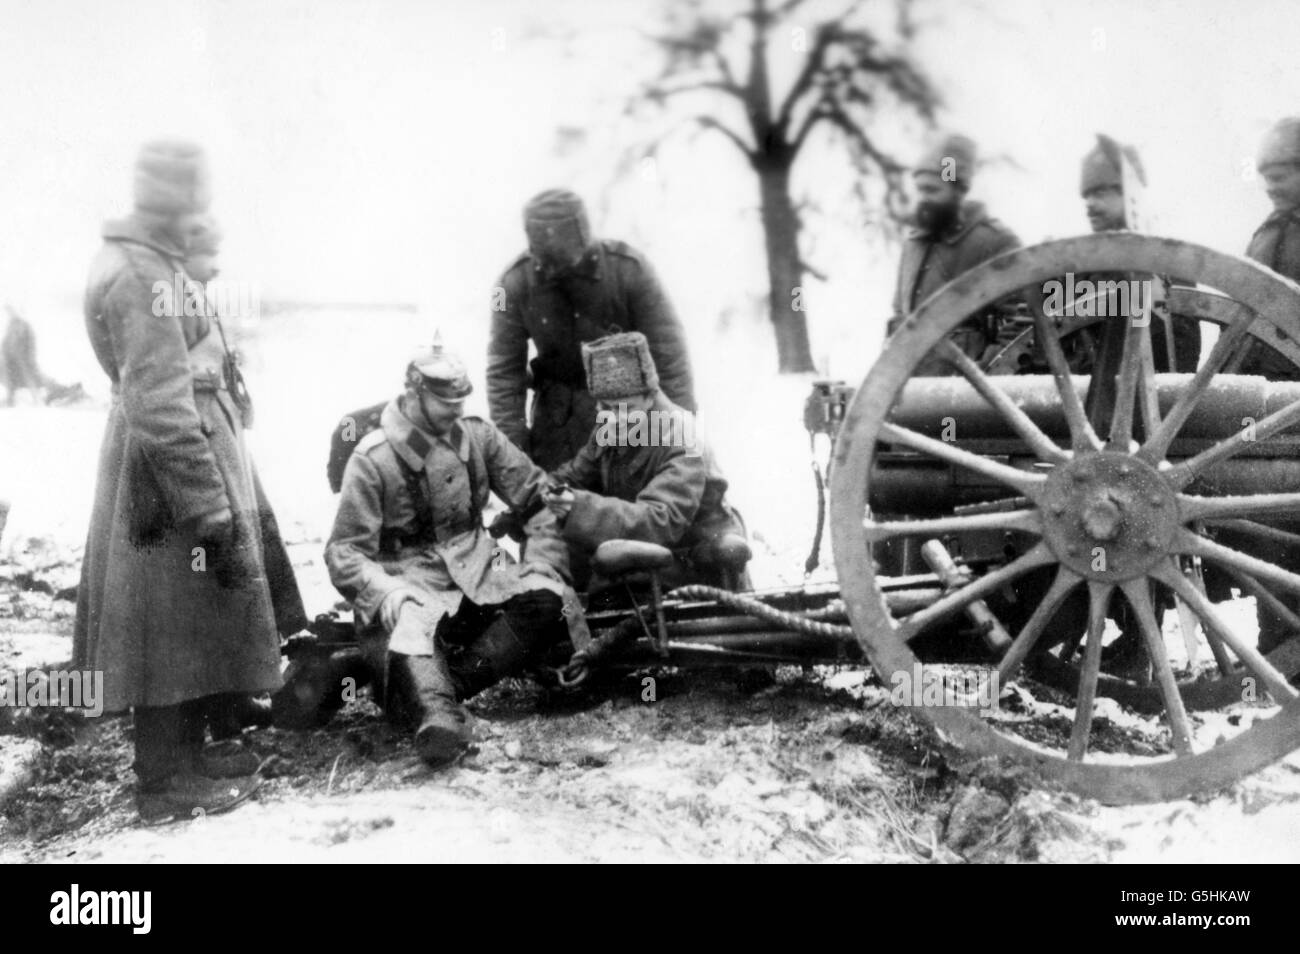 Erster Weltkrieg - Russische Armee - Deutscher Kriegsgefangener. Russische Soldaten und ein deutscher Kriegsgefangener studieren ein Bajonett. Stockfoto